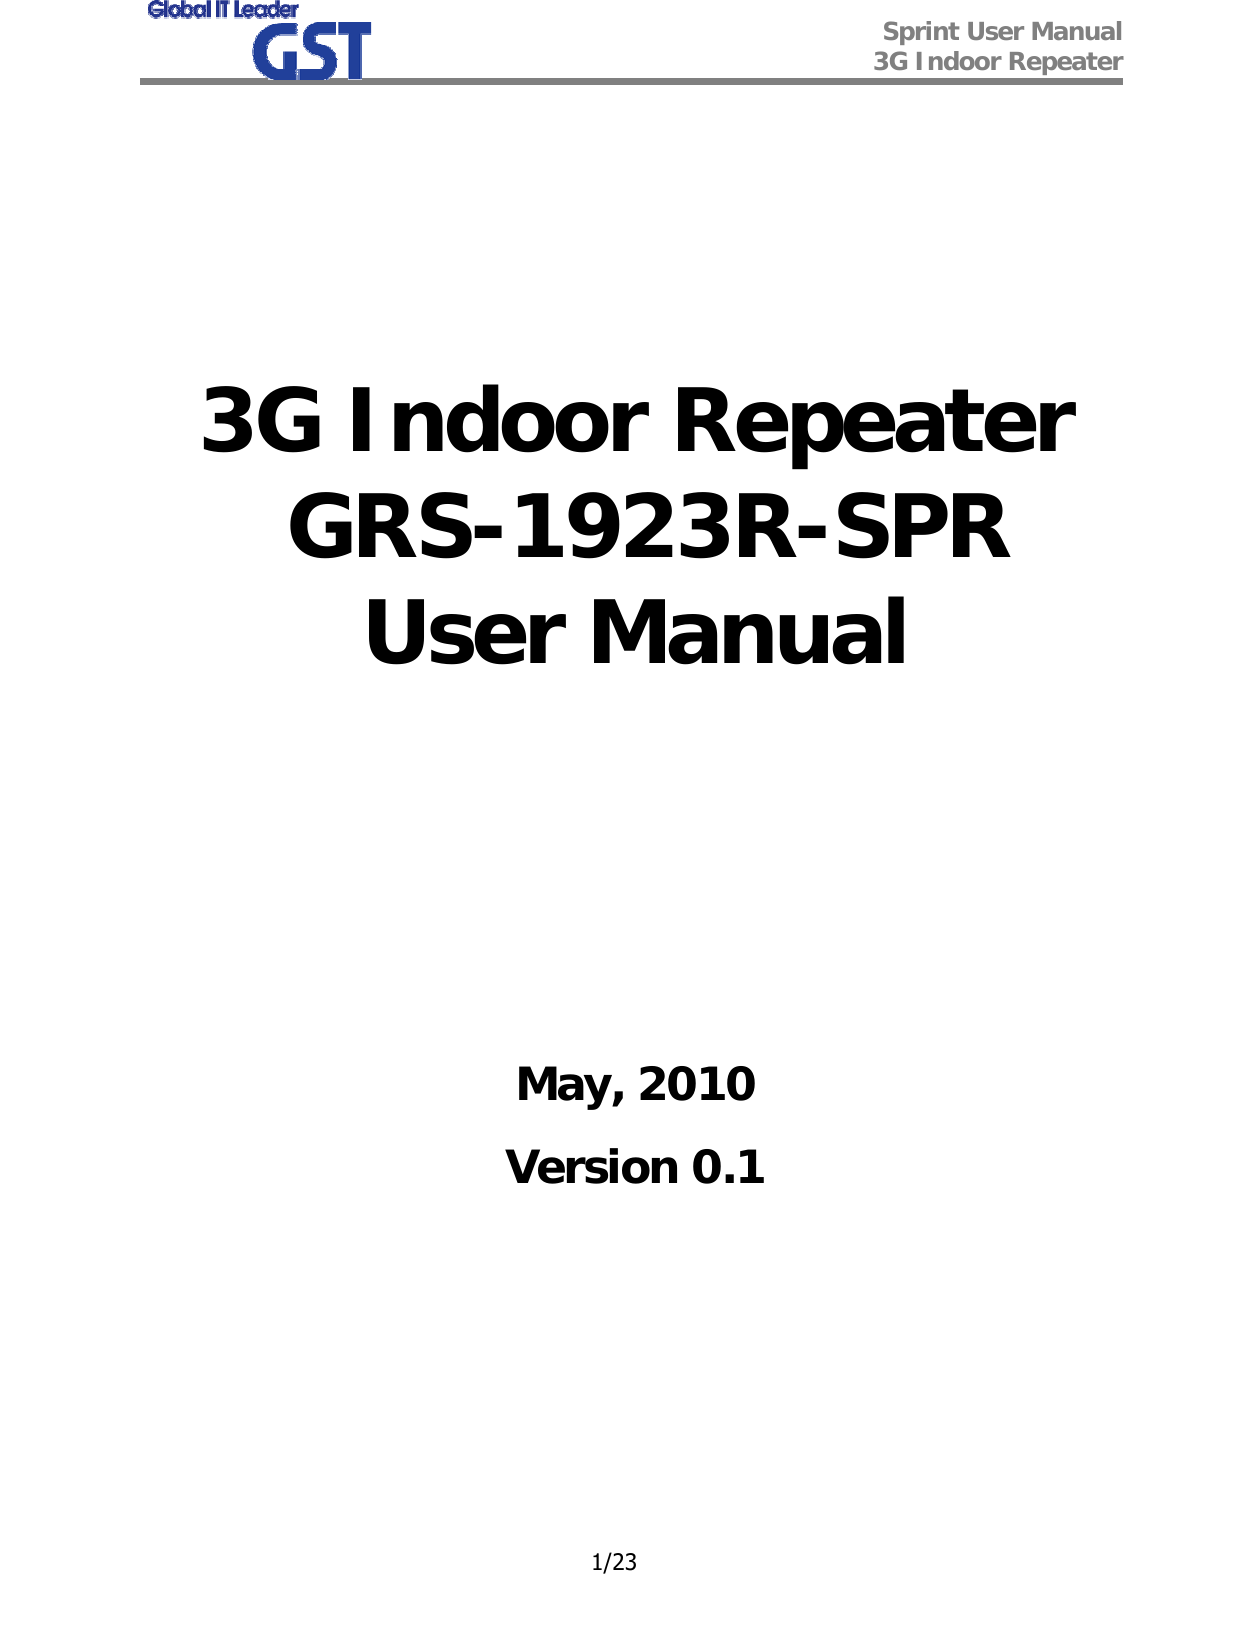  Sprint User Manual 3G Indoor Repeater   1/23       3G Indoor Repeater  GRS-1923R-SPR User Manual          May, 2010 Version 0.1        